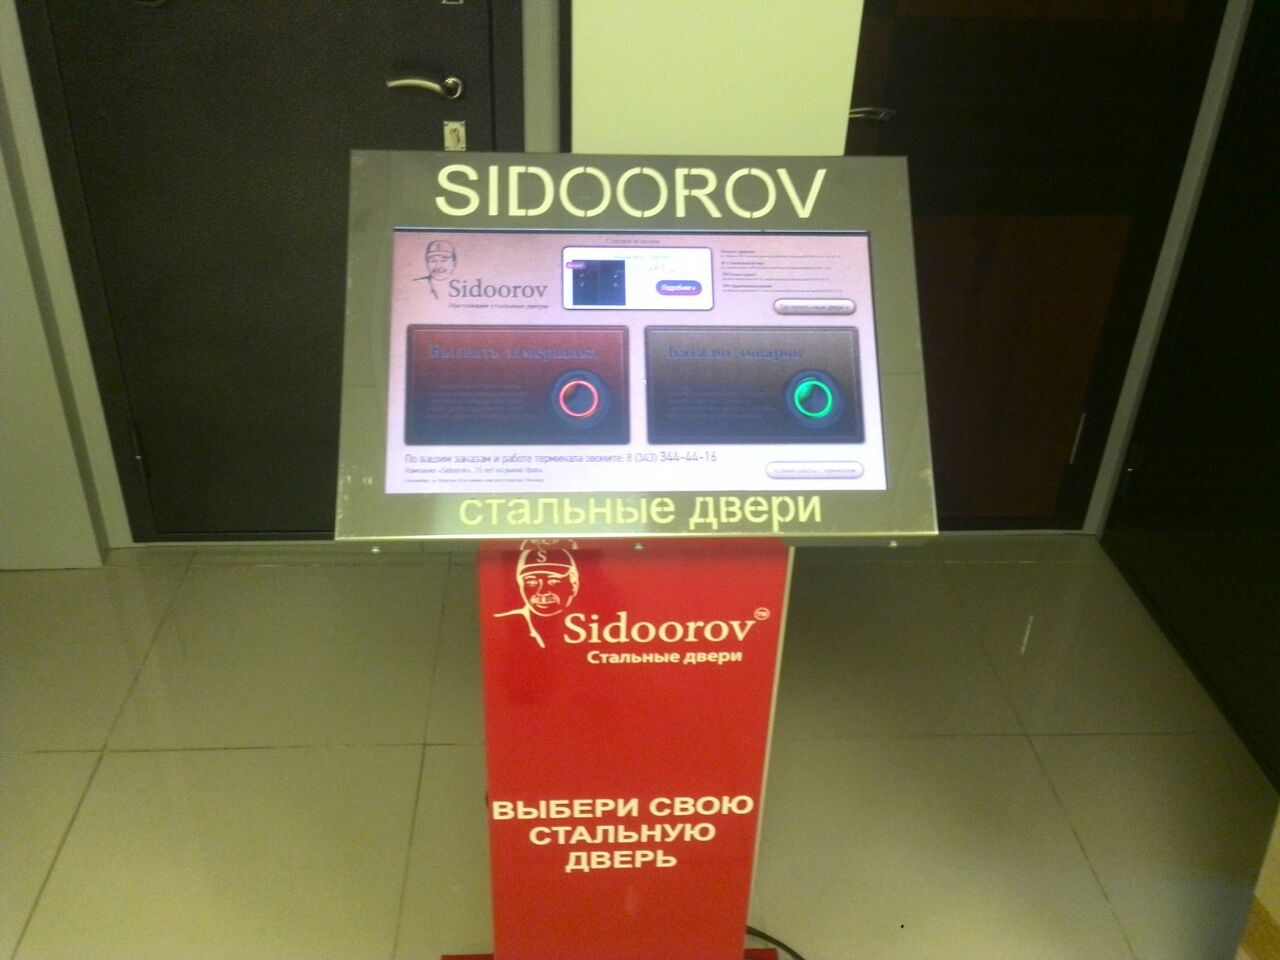 Создание инфокиоска-терминала Sidoorov